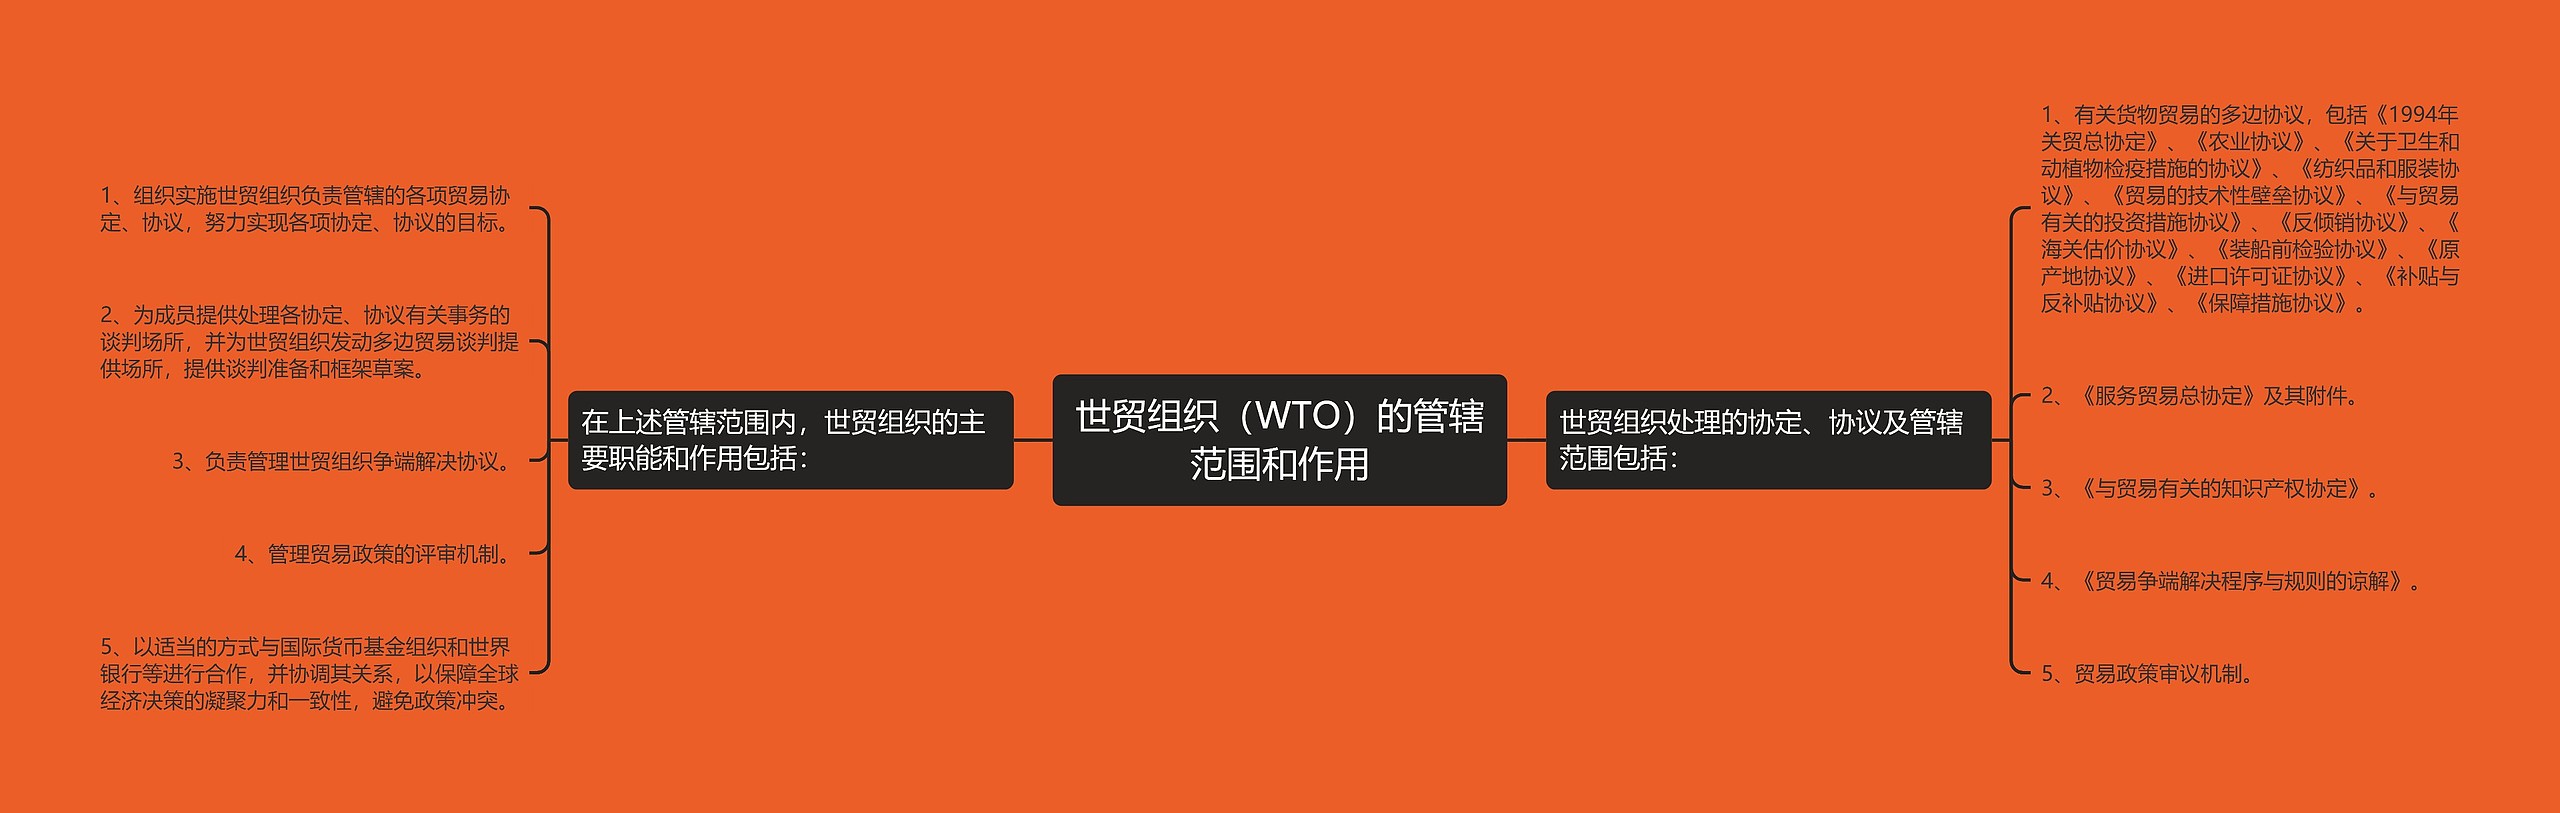 世贸组织（WTO）的管辖范围和作用思维导图